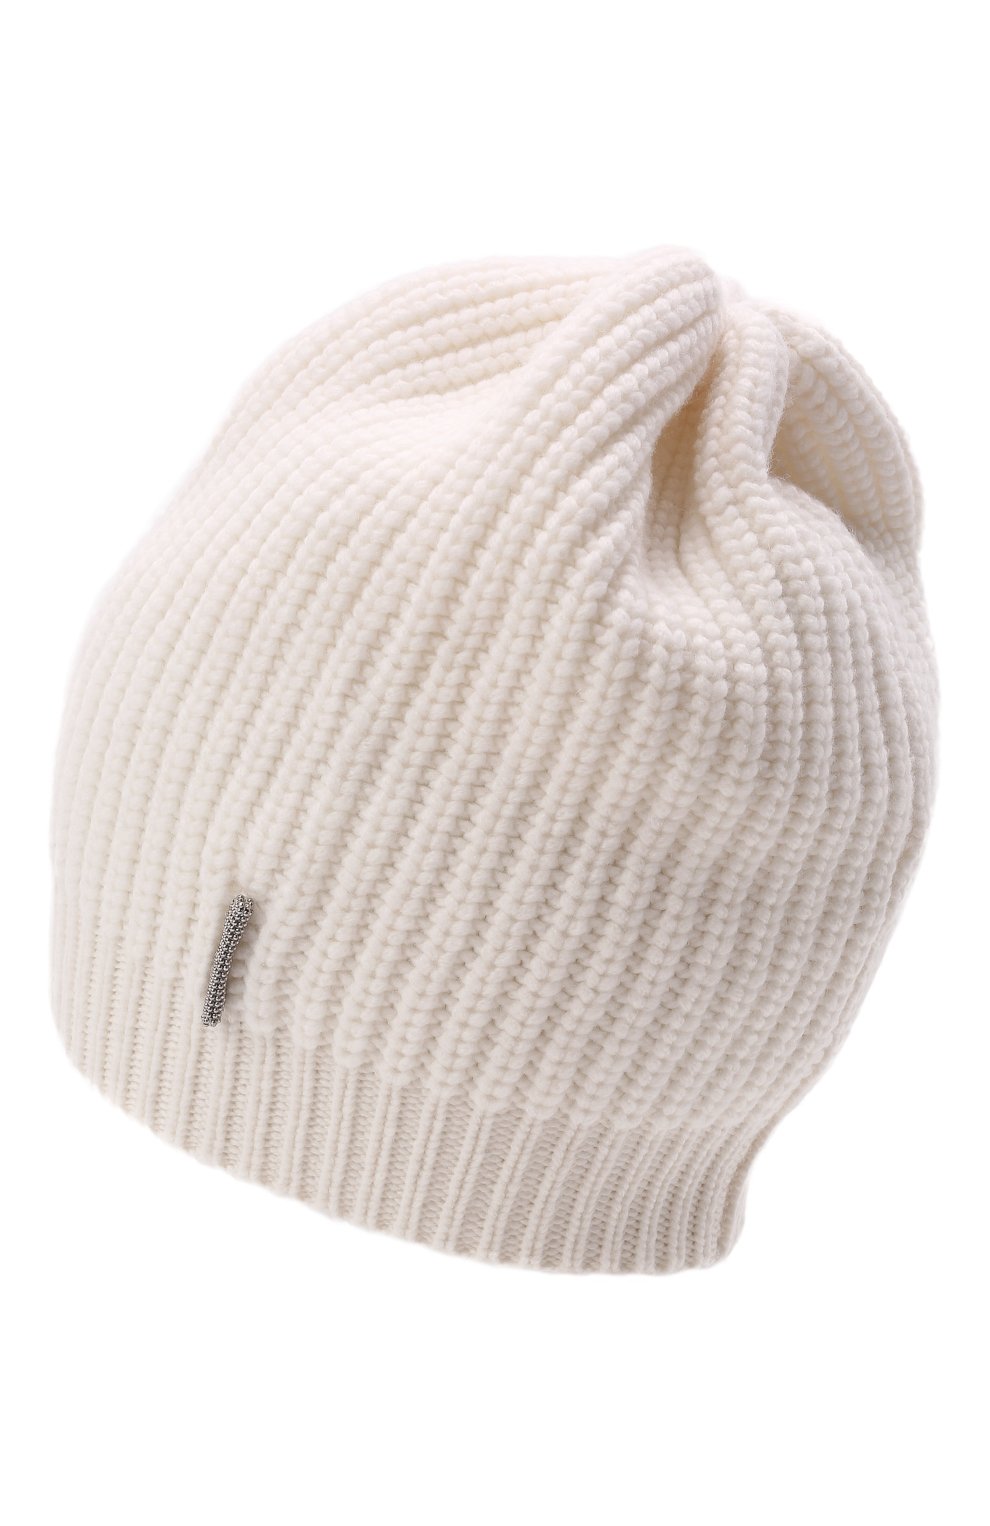 Детского кашемировая шапка BRUNELLO CUCINELLI белого цвета, арт. B52M50299C | Фото 2 (Материал: Текстиль, Кашемир, Шерсть)